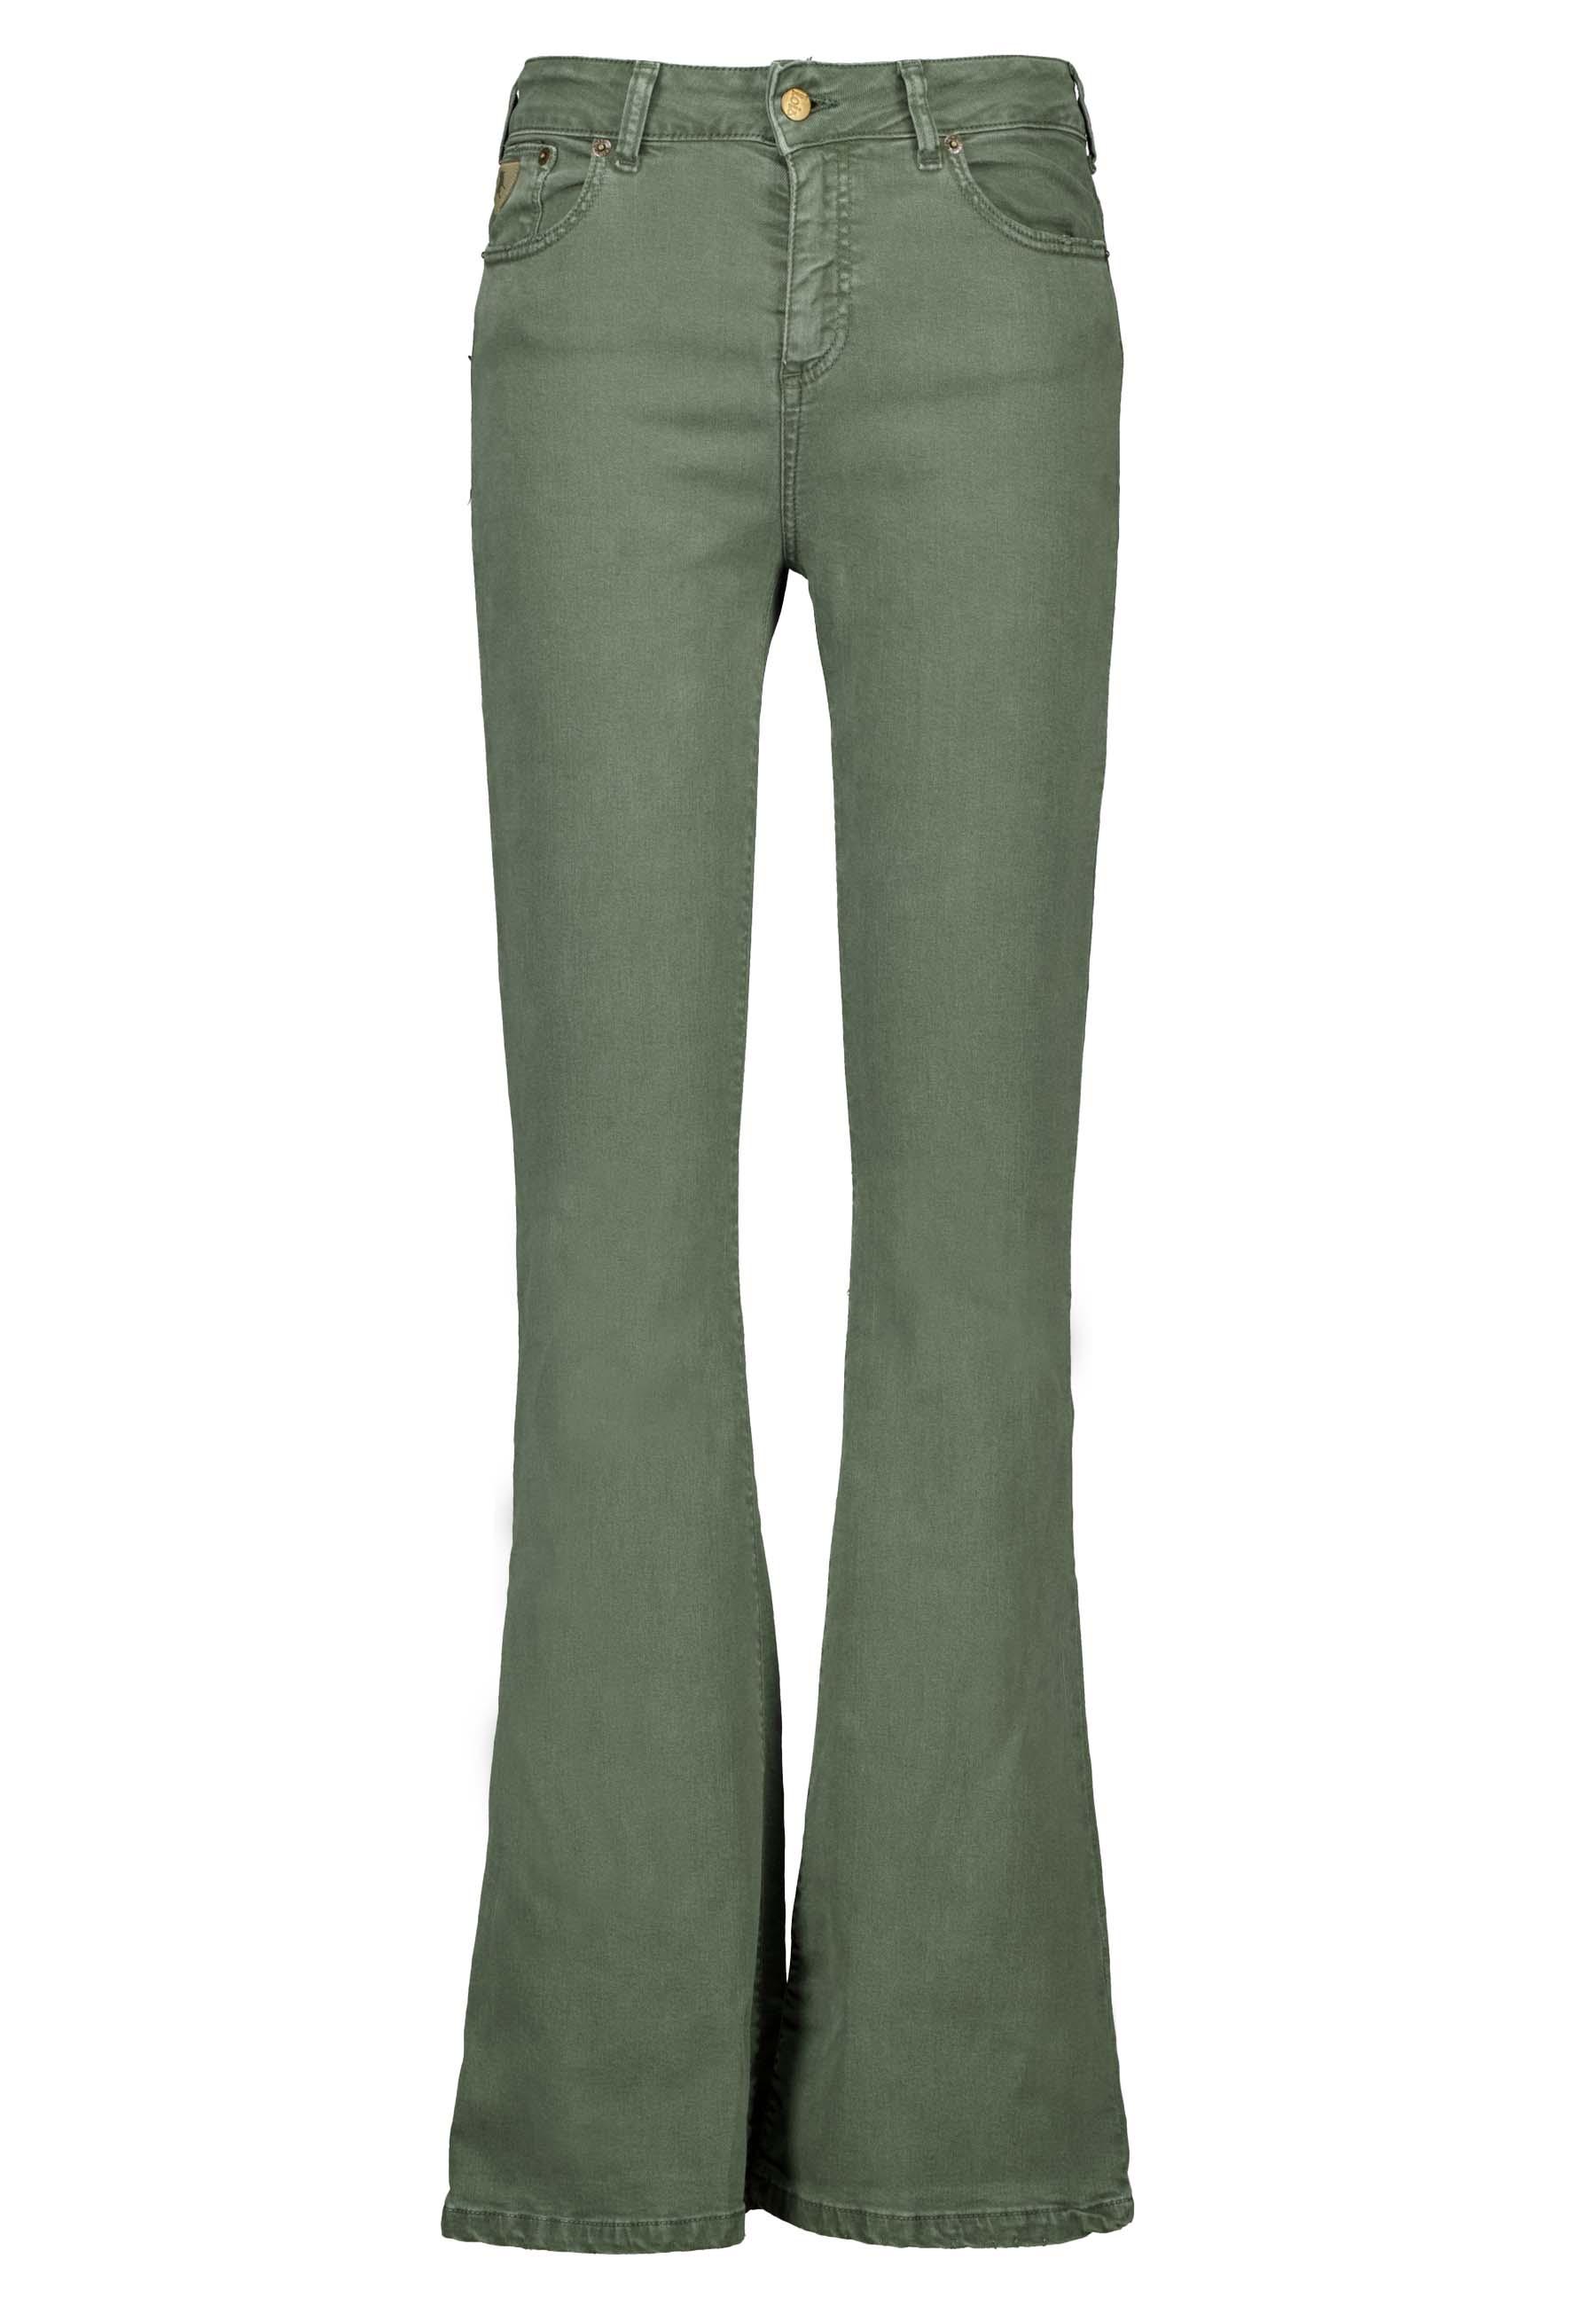 Lois Raval jeans groen Dames maat 29/32